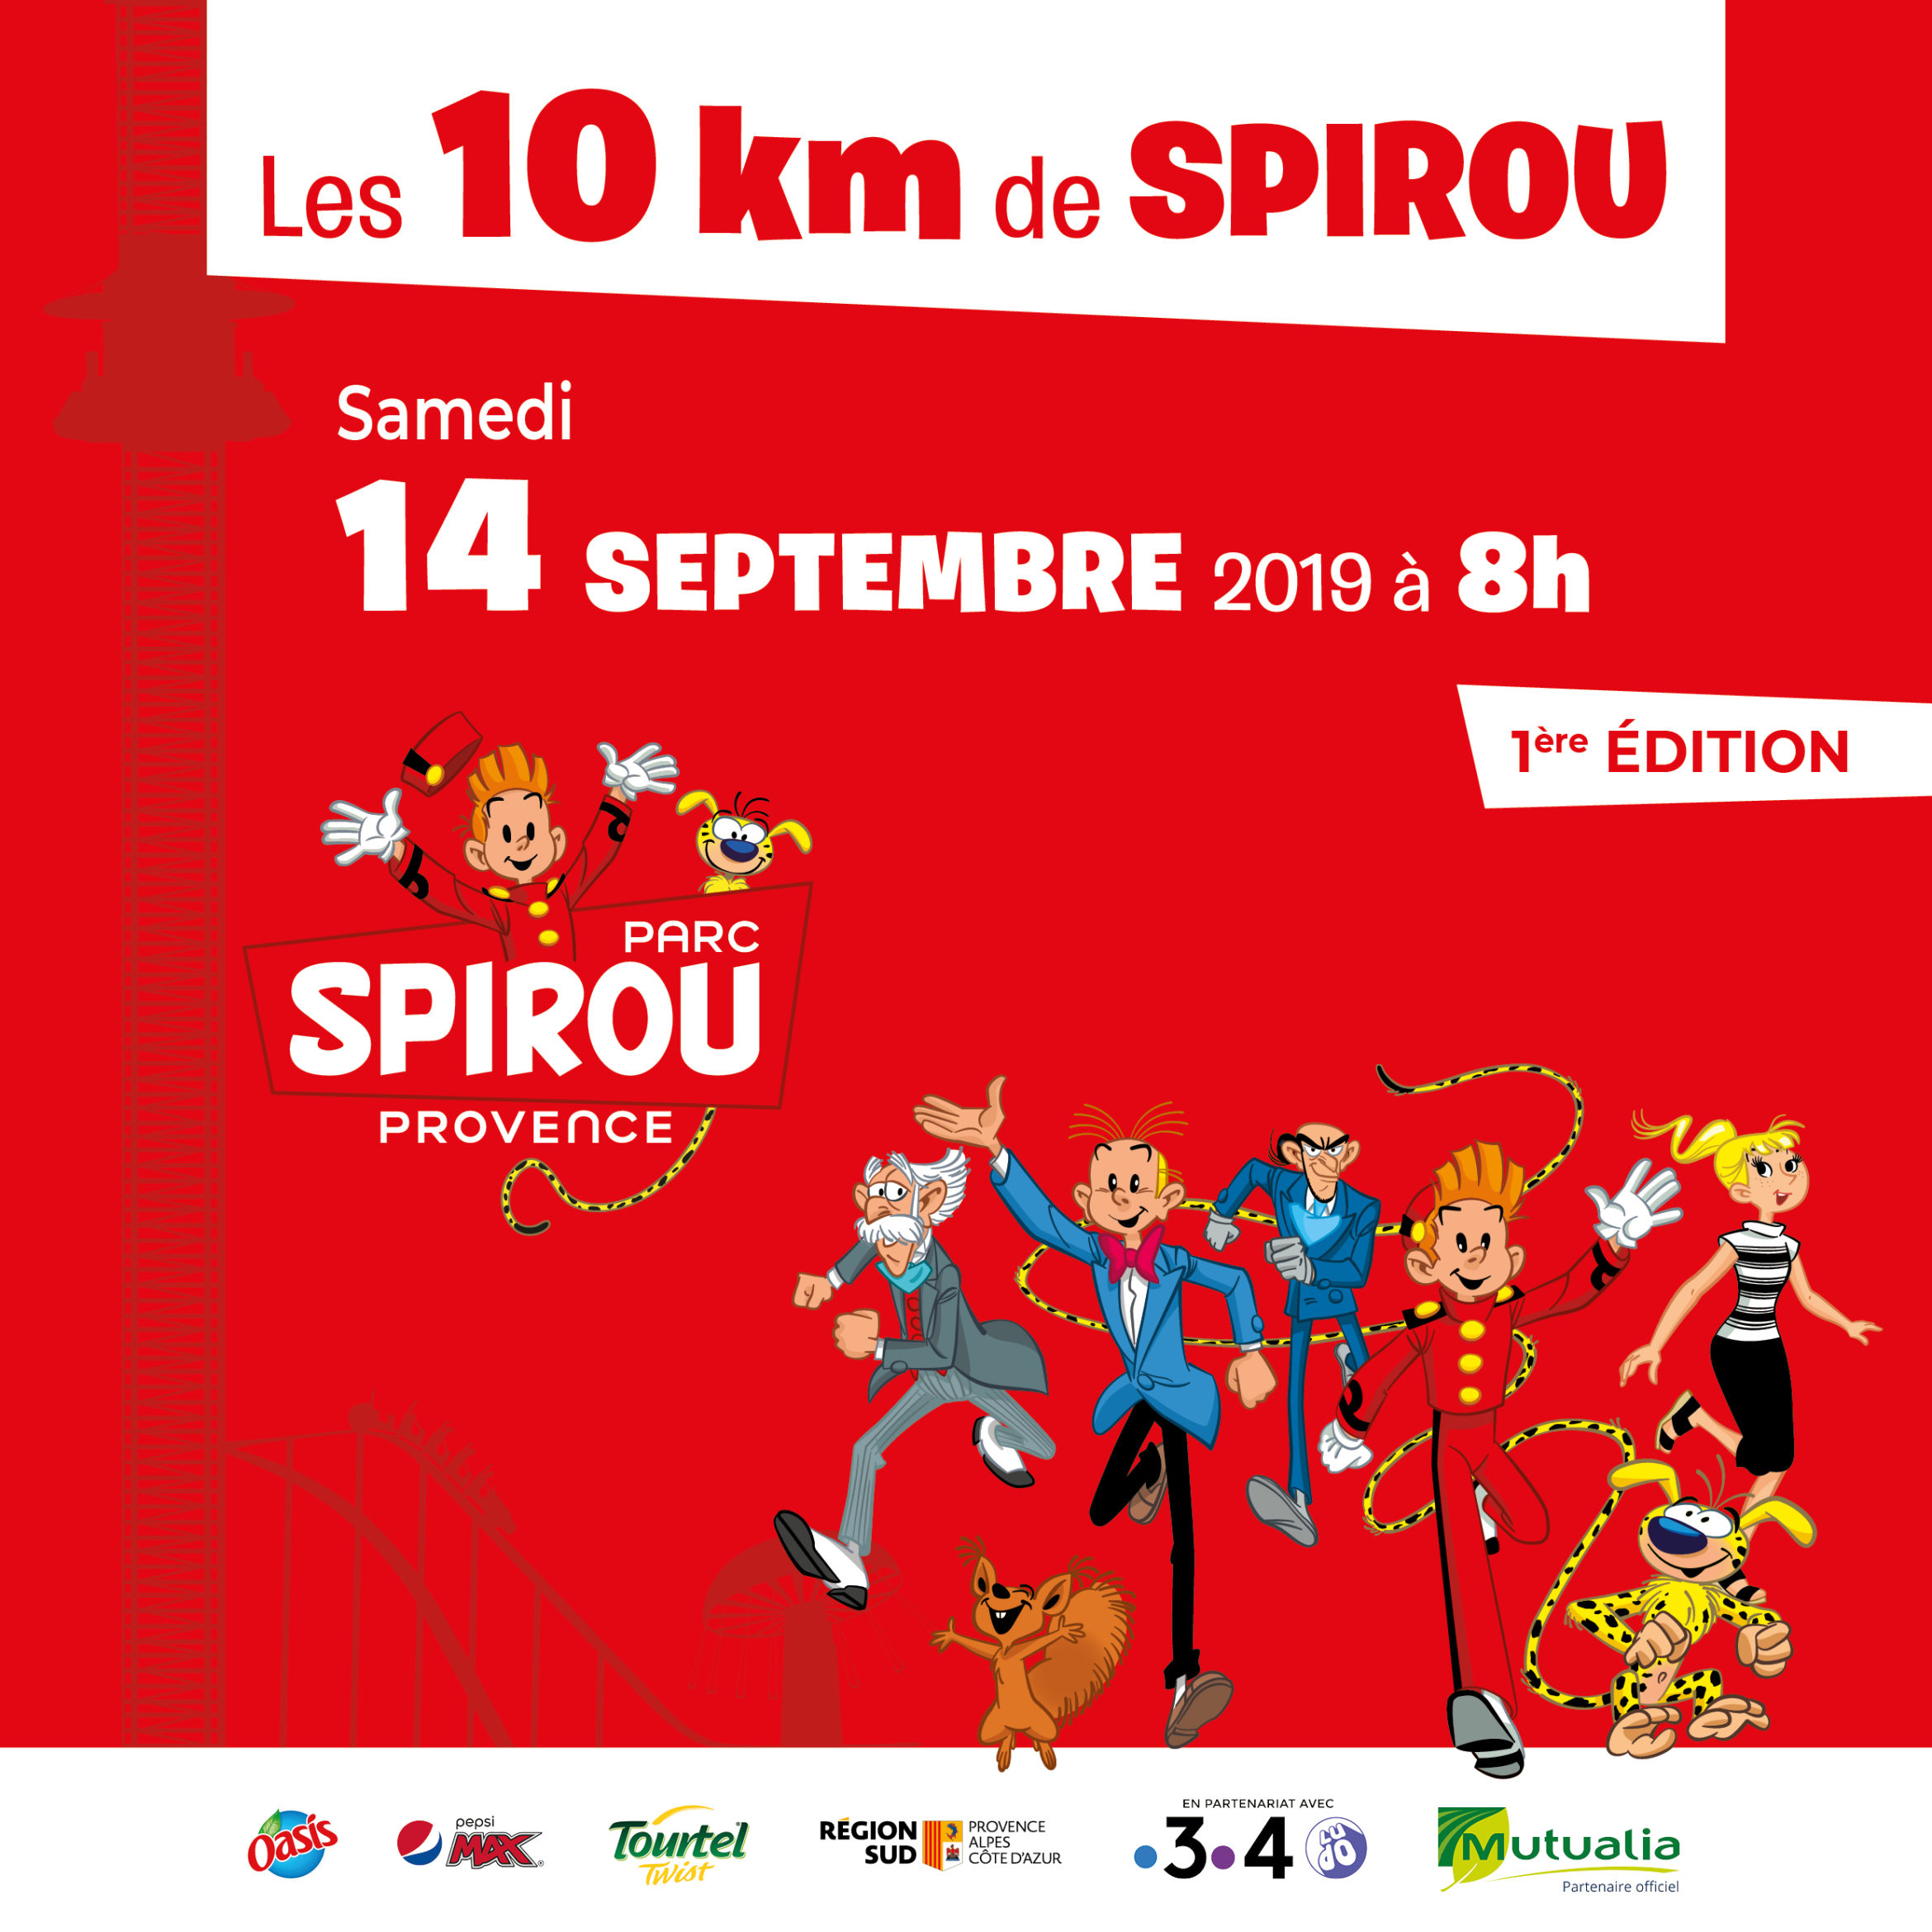 Participez aux "10 km de Spirou" !